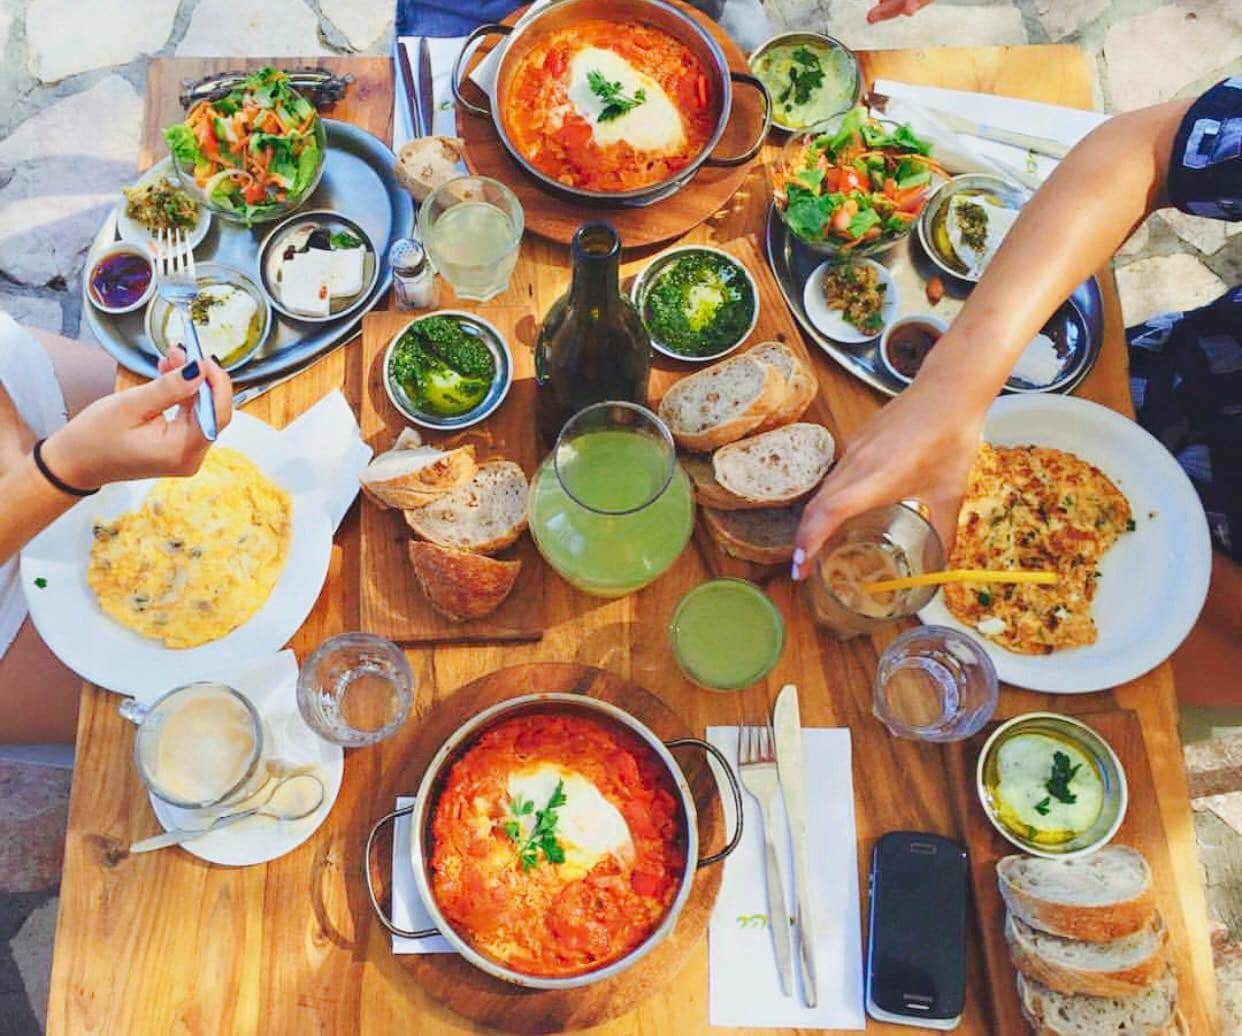 ארוחה צמחונית במסעדת בר בהר מטה יהודה. צילום: אמיר אדירי 